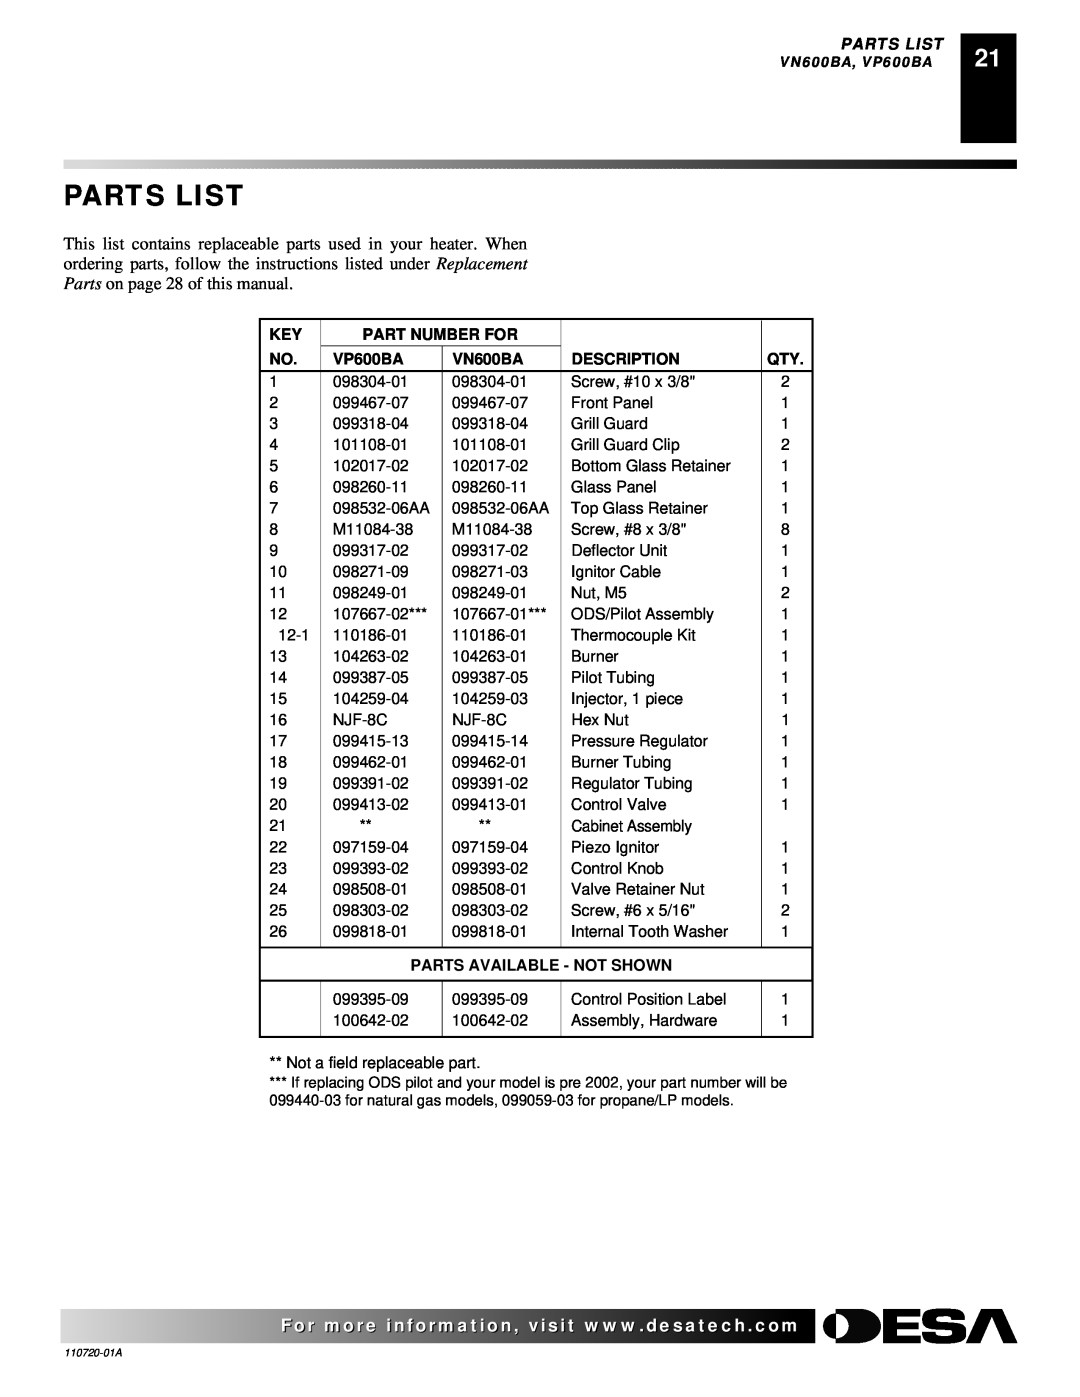 Desa VP10A, VP1000BTA VN10A Parts List, Part Number For, VP600BA, VN600BA, Description, Parts Available - Not Shown 